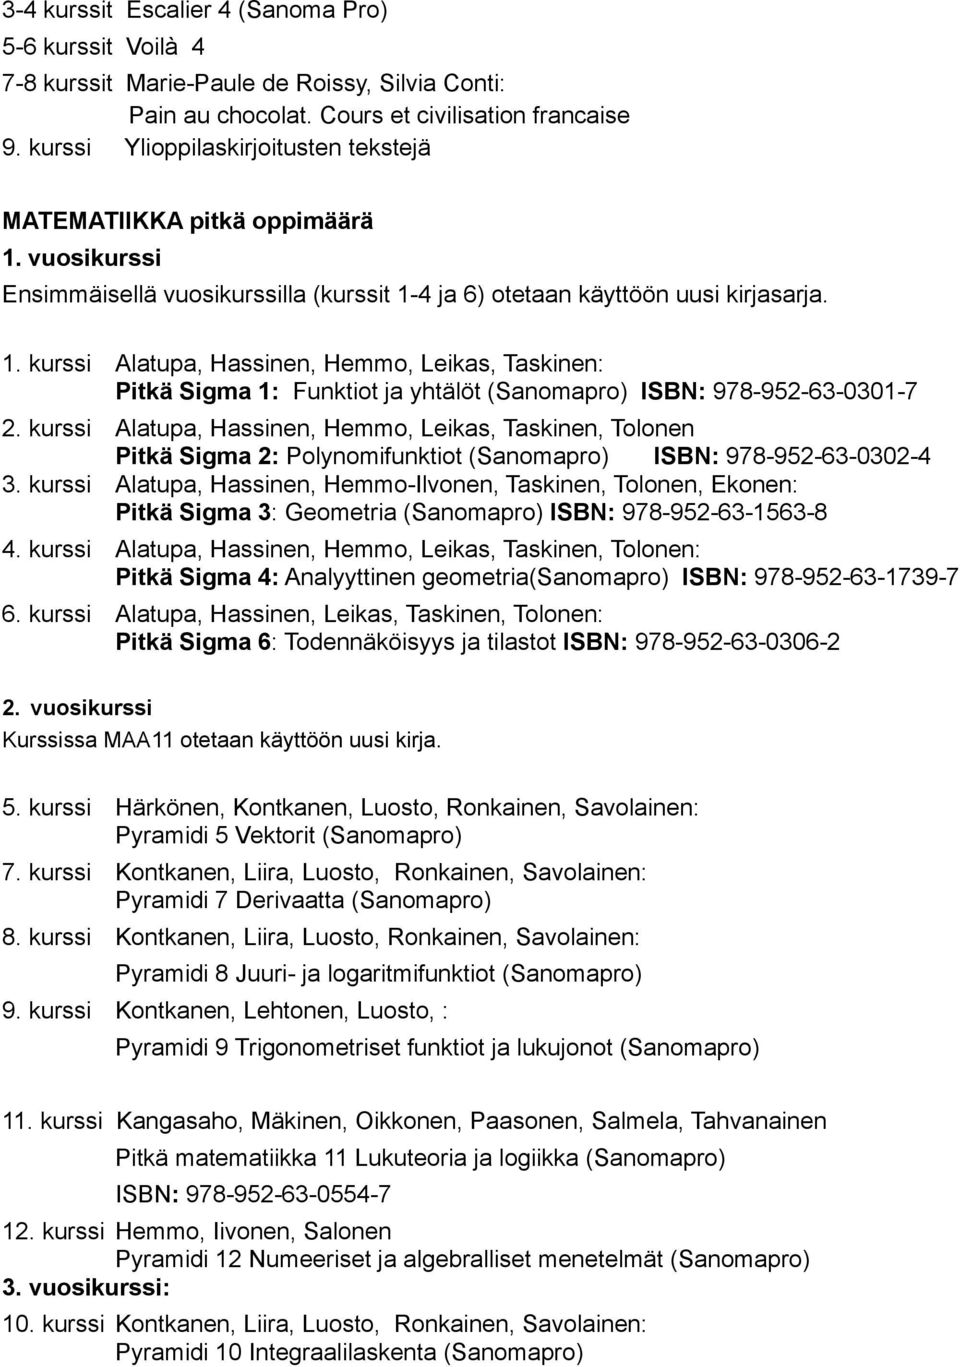 kurssi Alatupa, Hassinen, Hemmo, Leikas, Taskinen, Tolonen Pitkä Sigma 2: Polynomifunktiot (Sanomapro) ISBN: 978-952-63-0302-4 3.